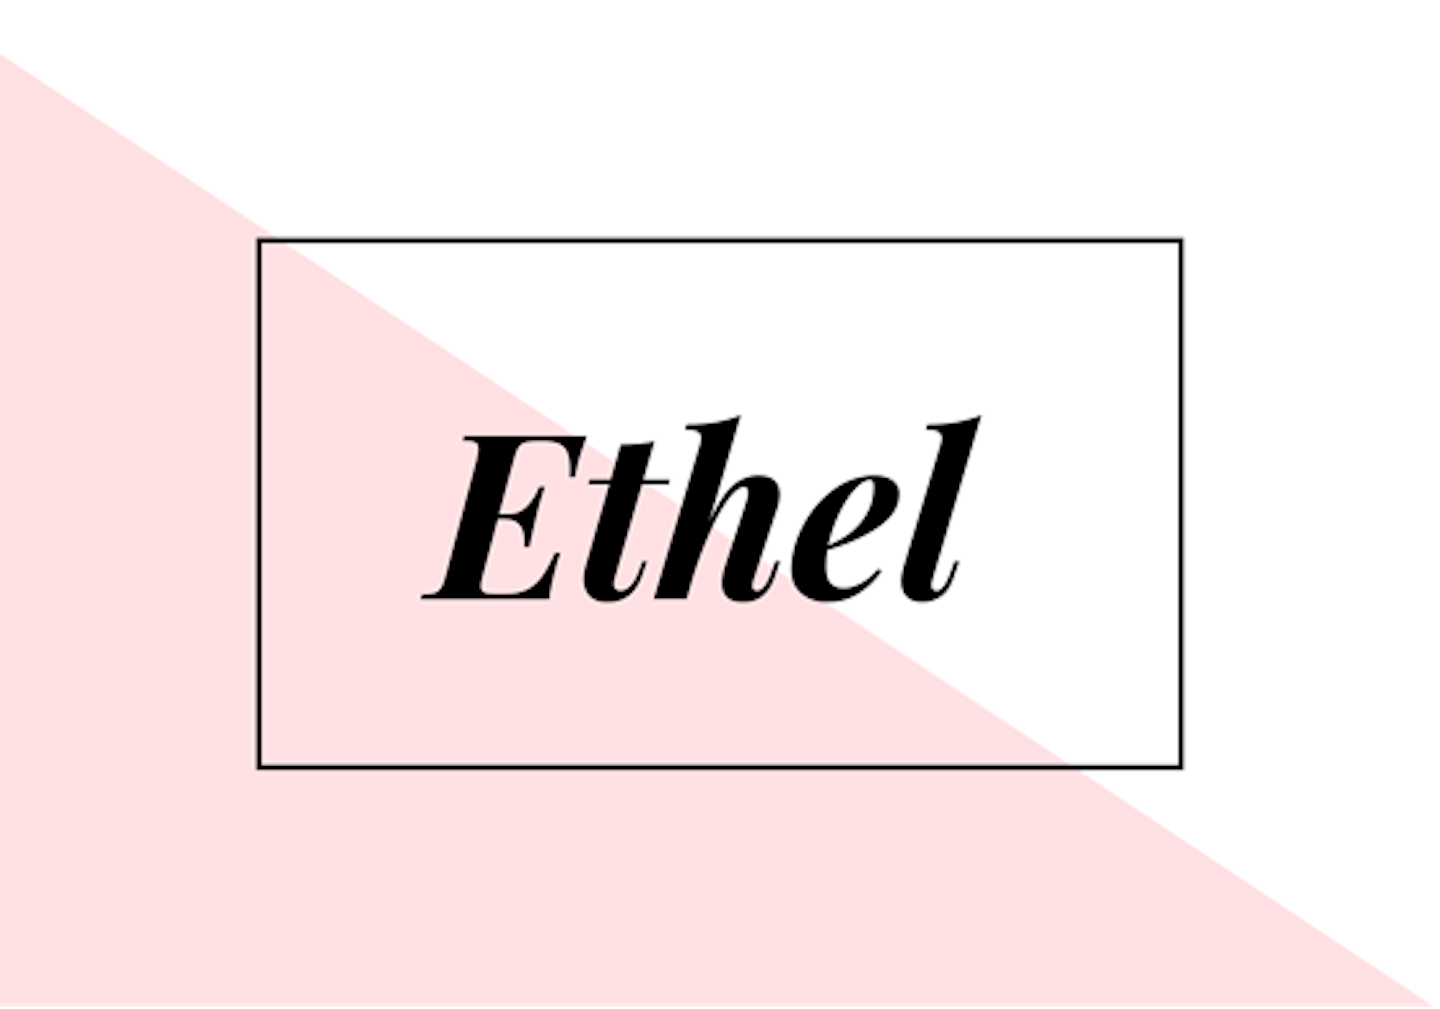 11) Ethel